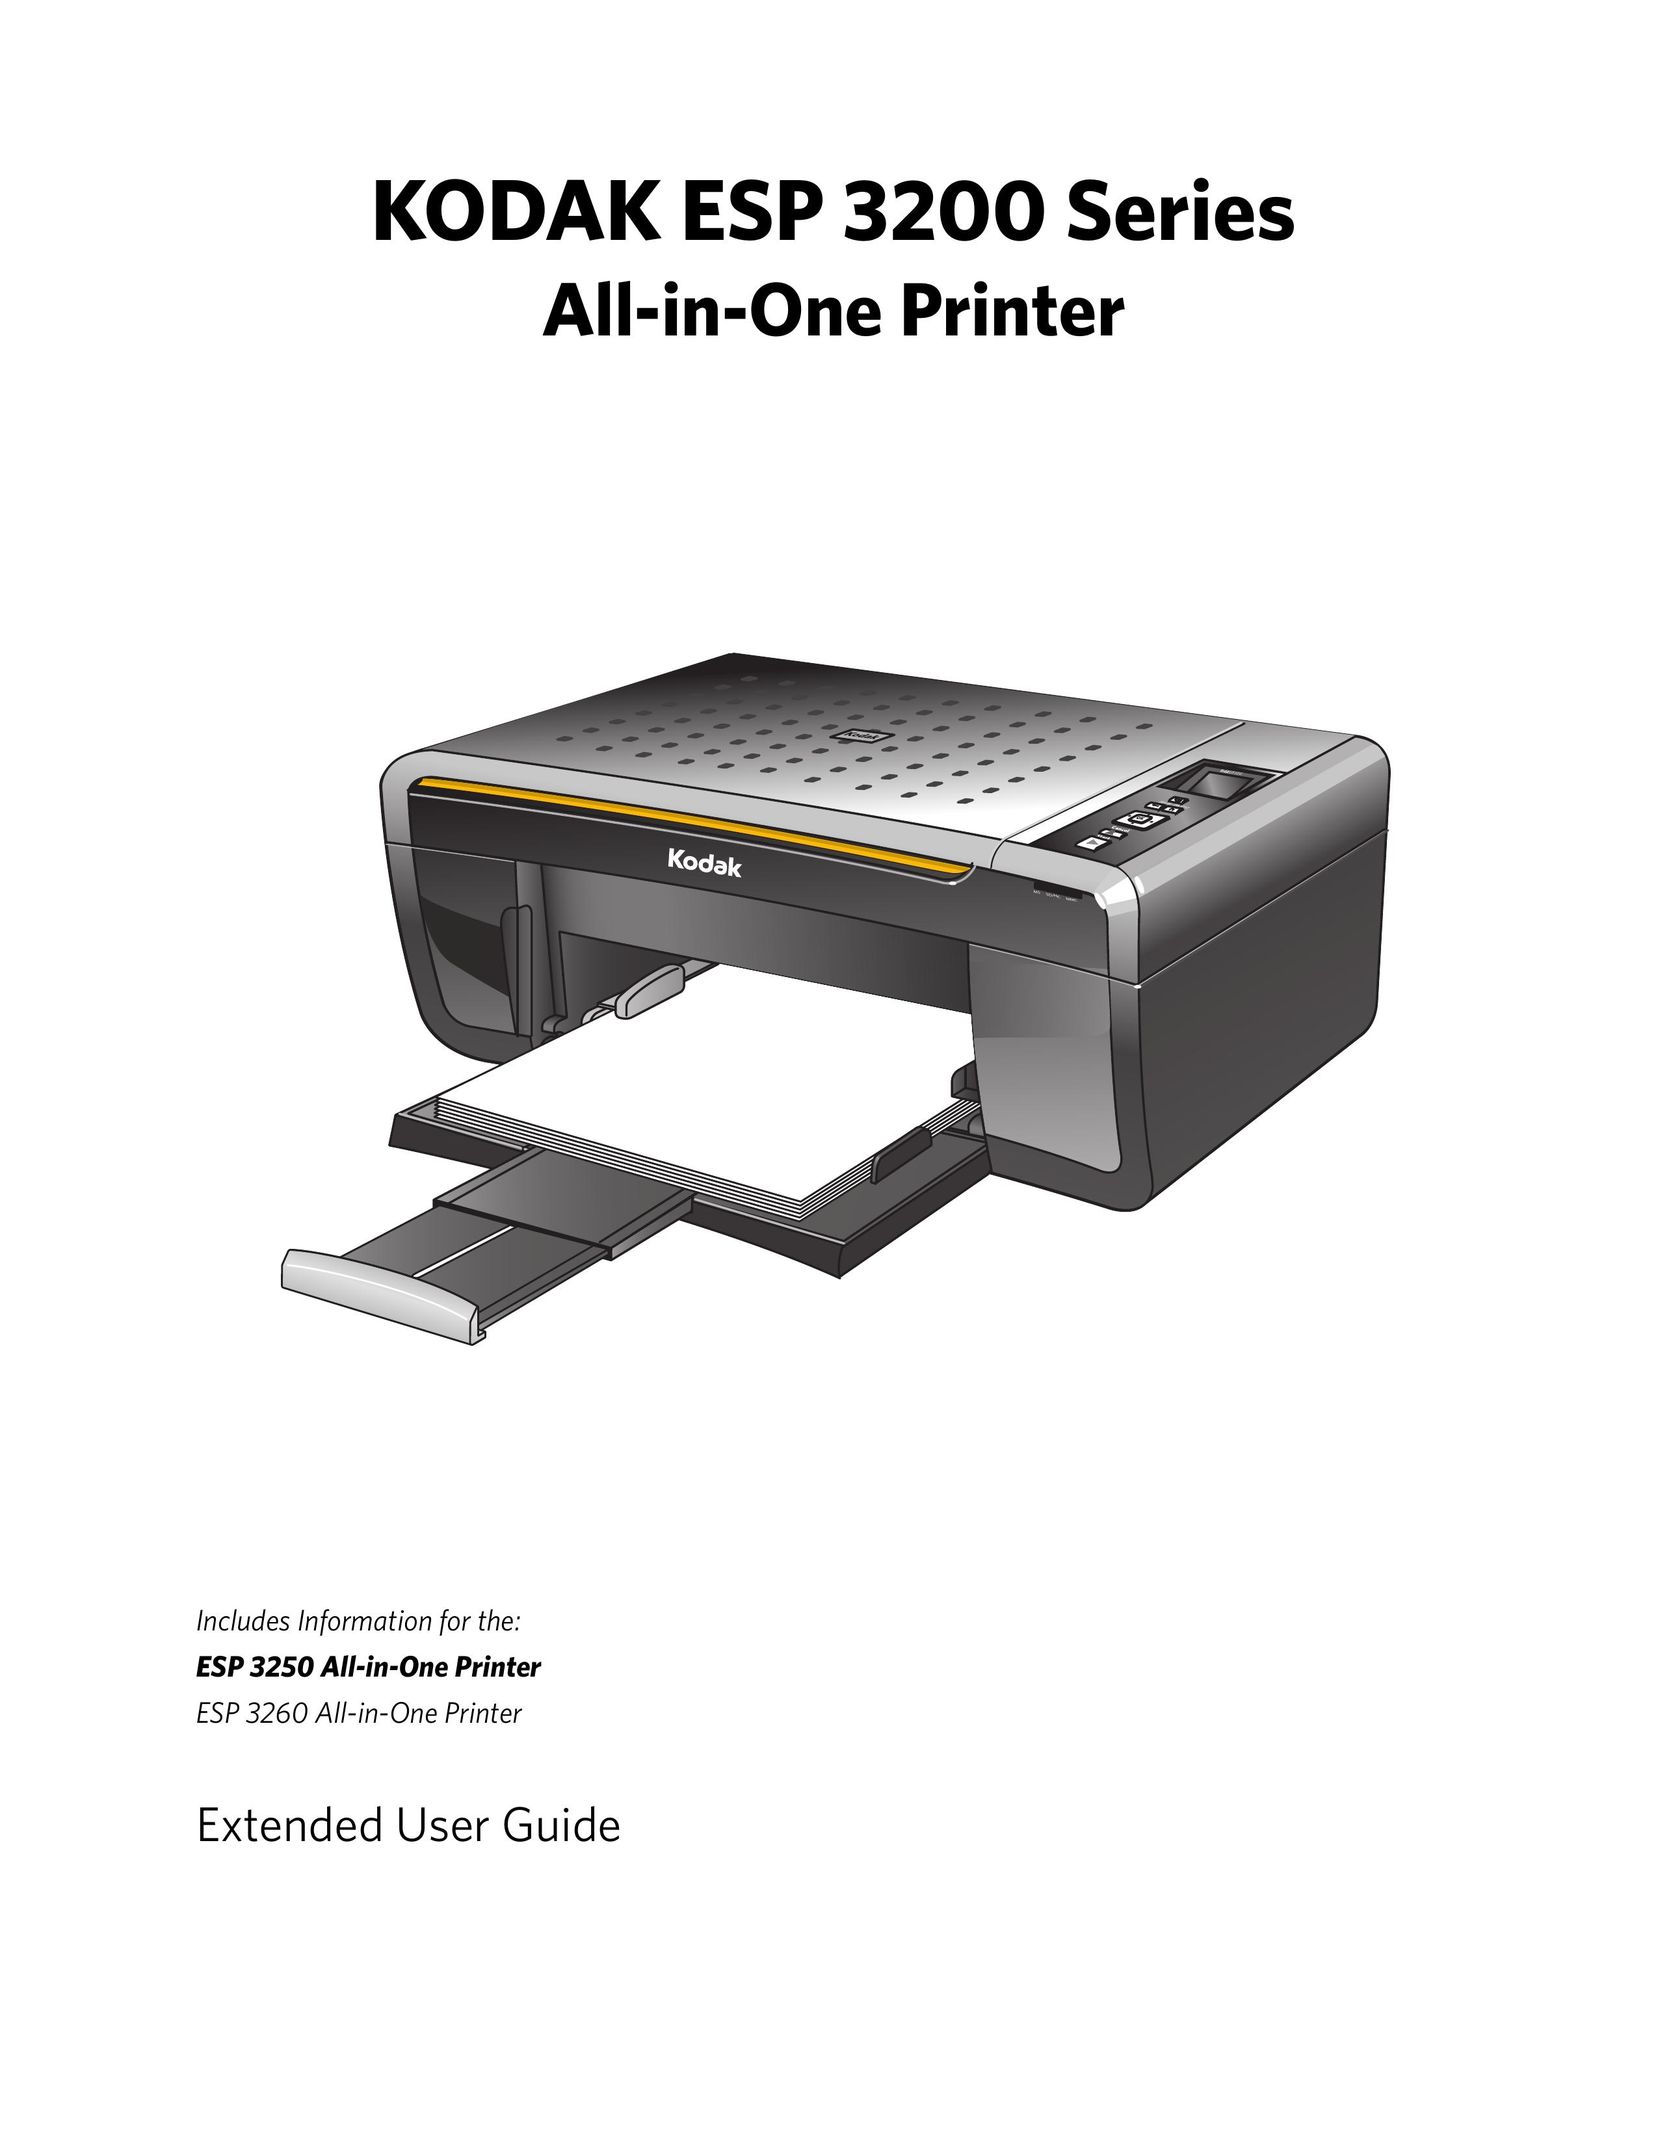 Kodak ESP 3200 Series All in One Printer User Manual